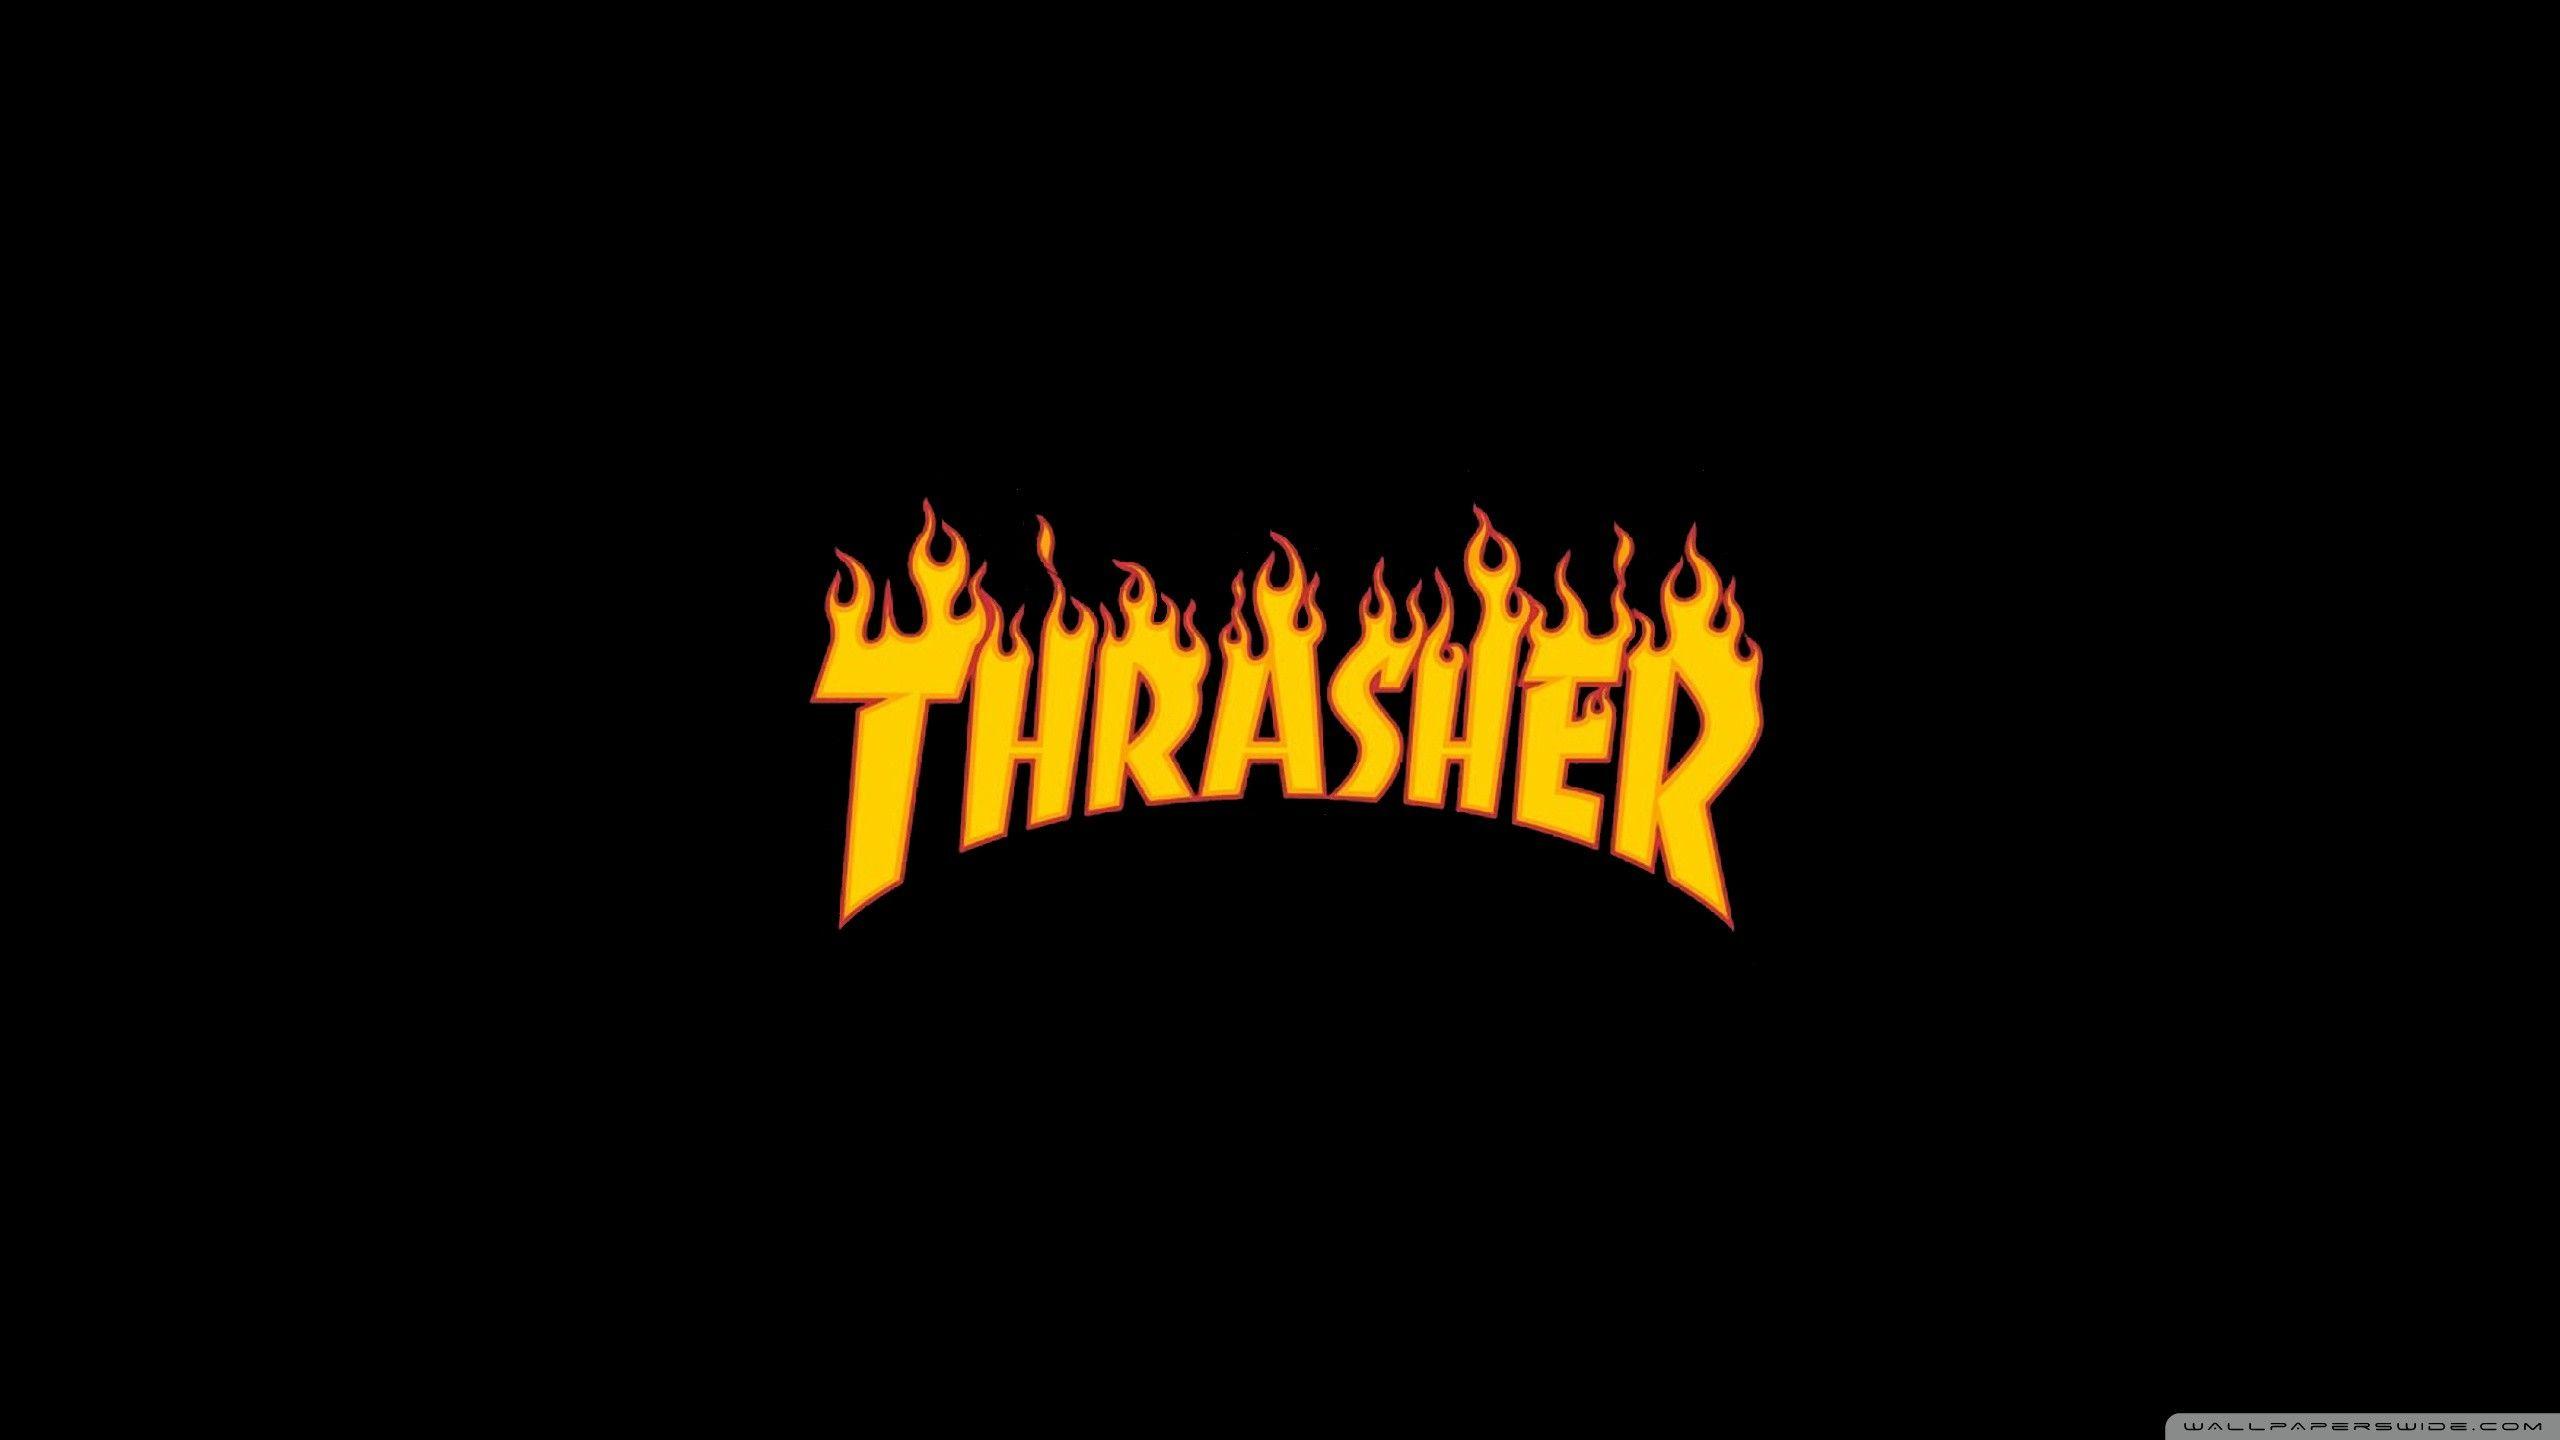 Chi tiết hơn 68 về hình nền thrasher hay nhất - coedo.com.vn